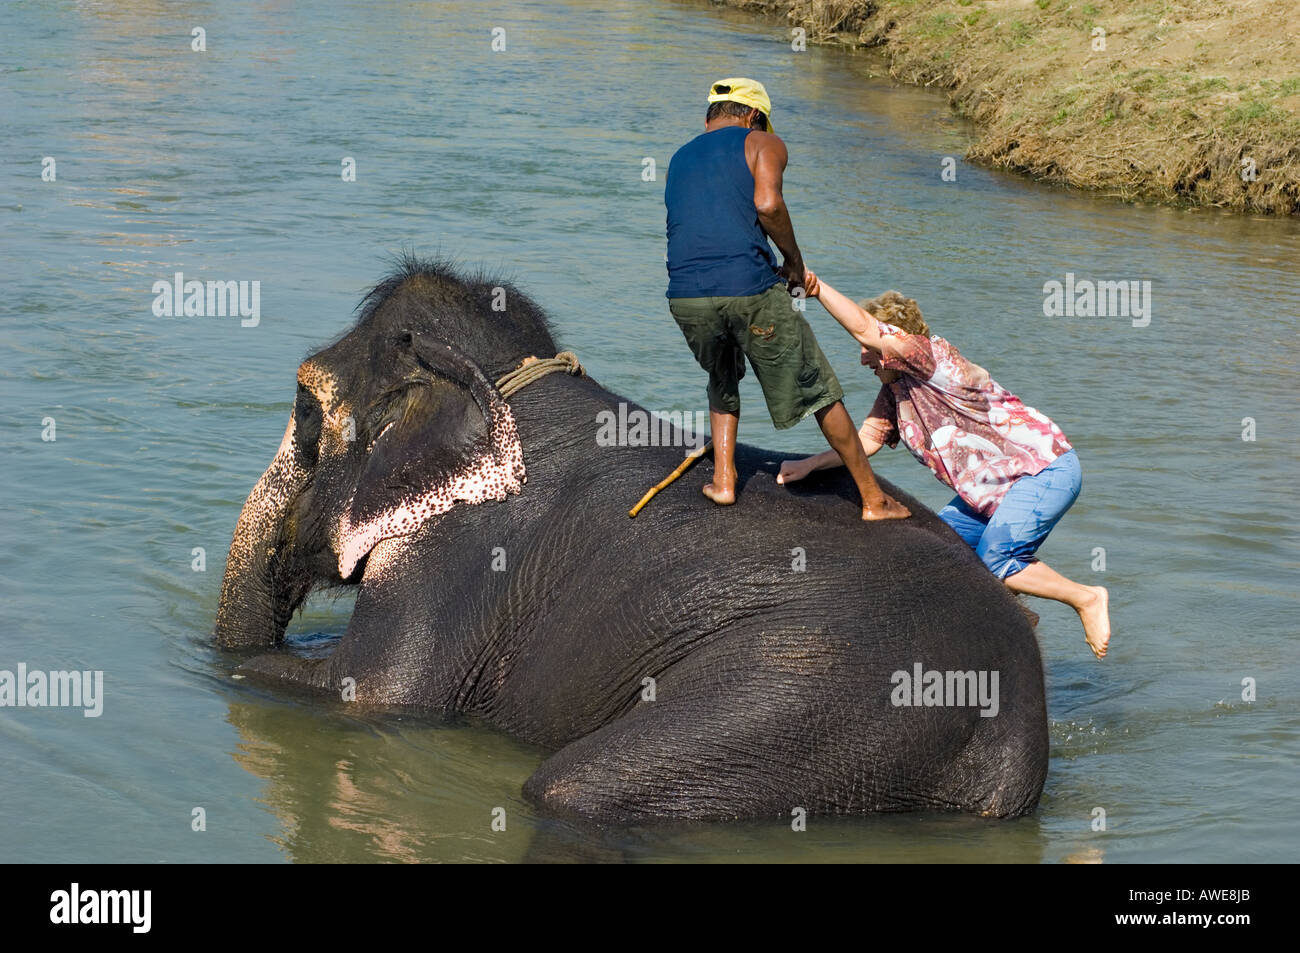 Bañando al elefant en los bancos del río Rapoti Nepal Asia Royal Chitwan National Park parque nacional mujer turista subir Foto de stock